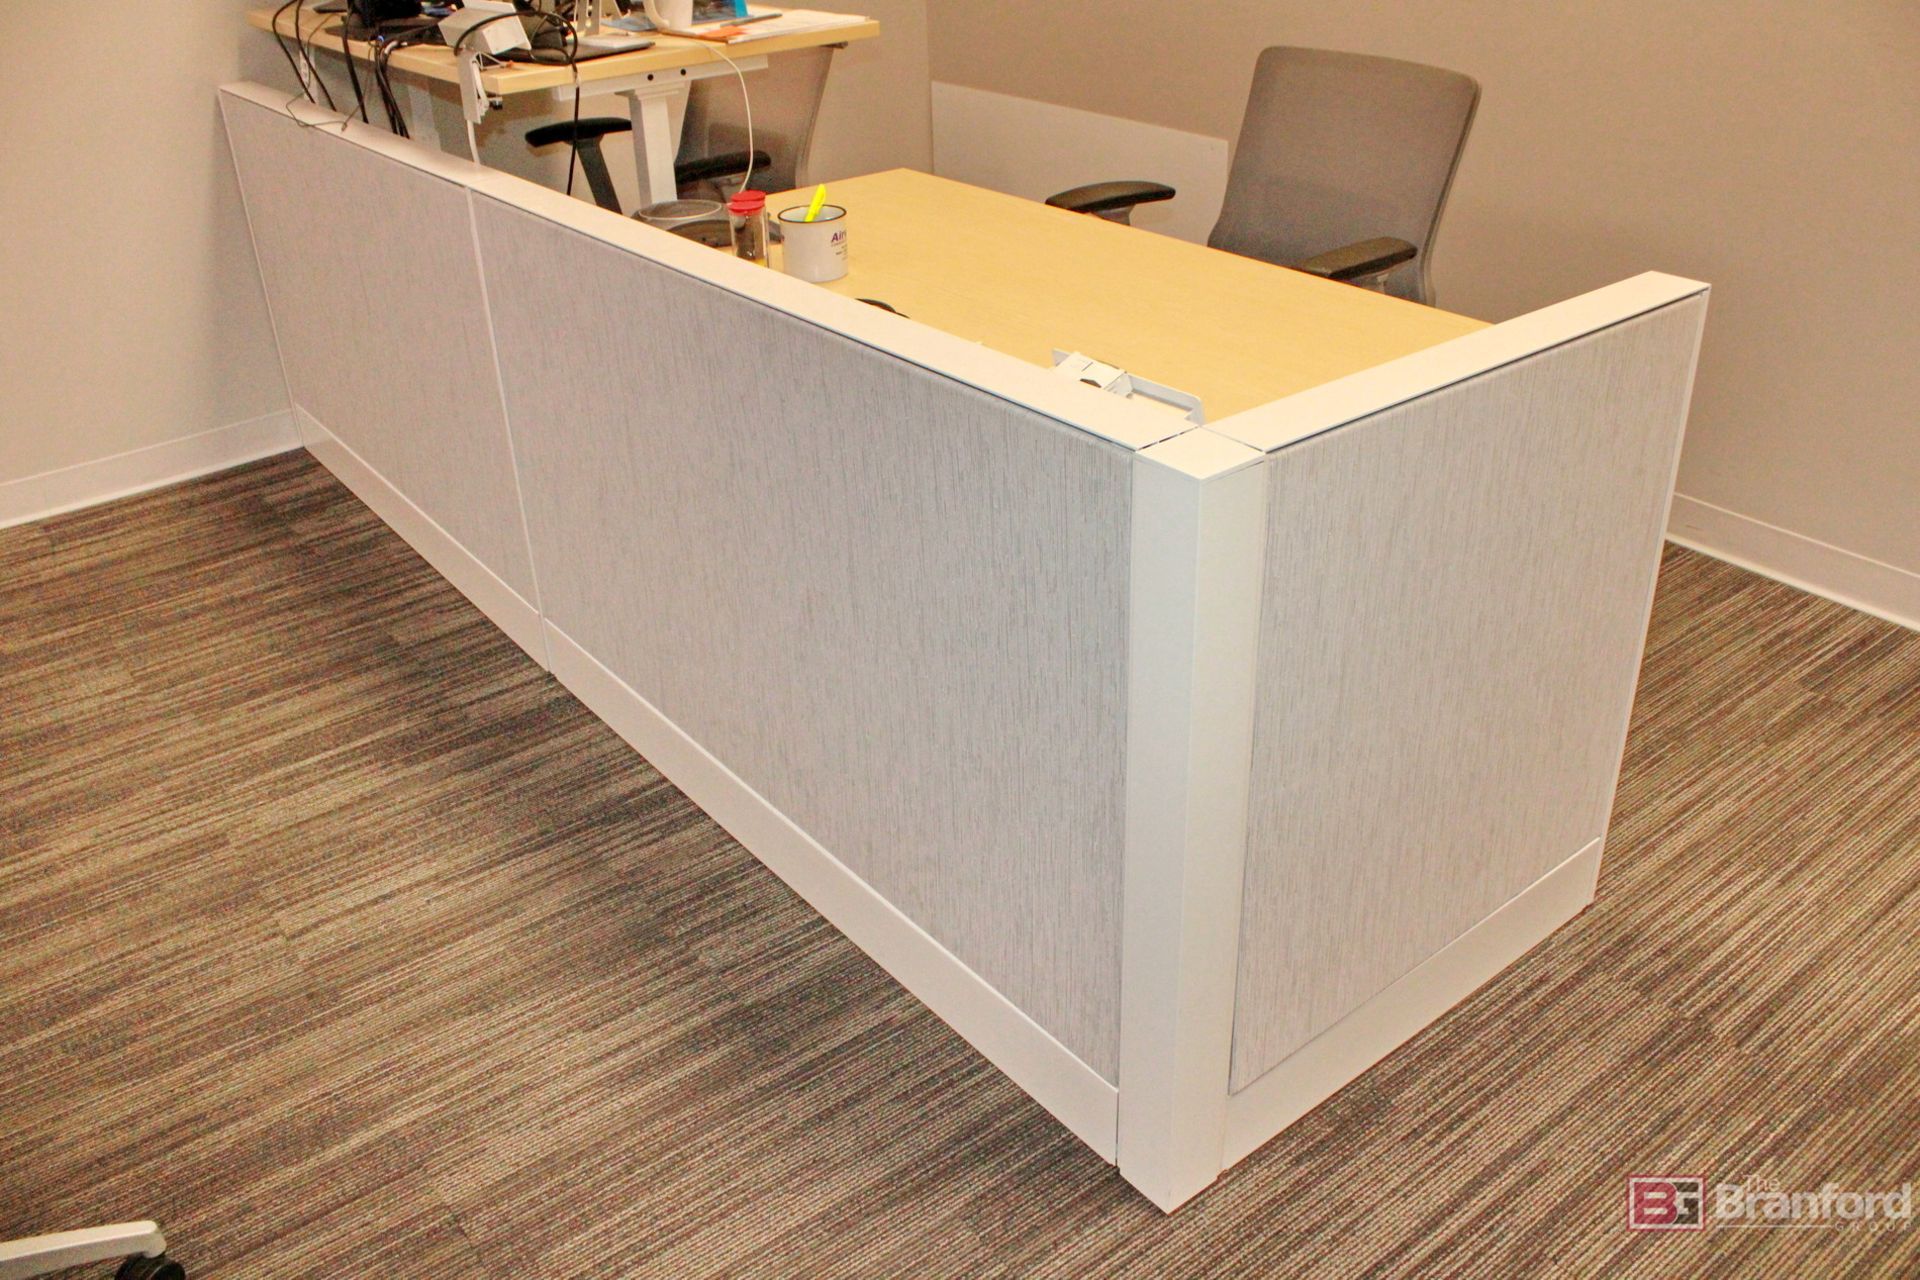 (2) Teknion Adjustable Standing Desks - Image 2 of 3